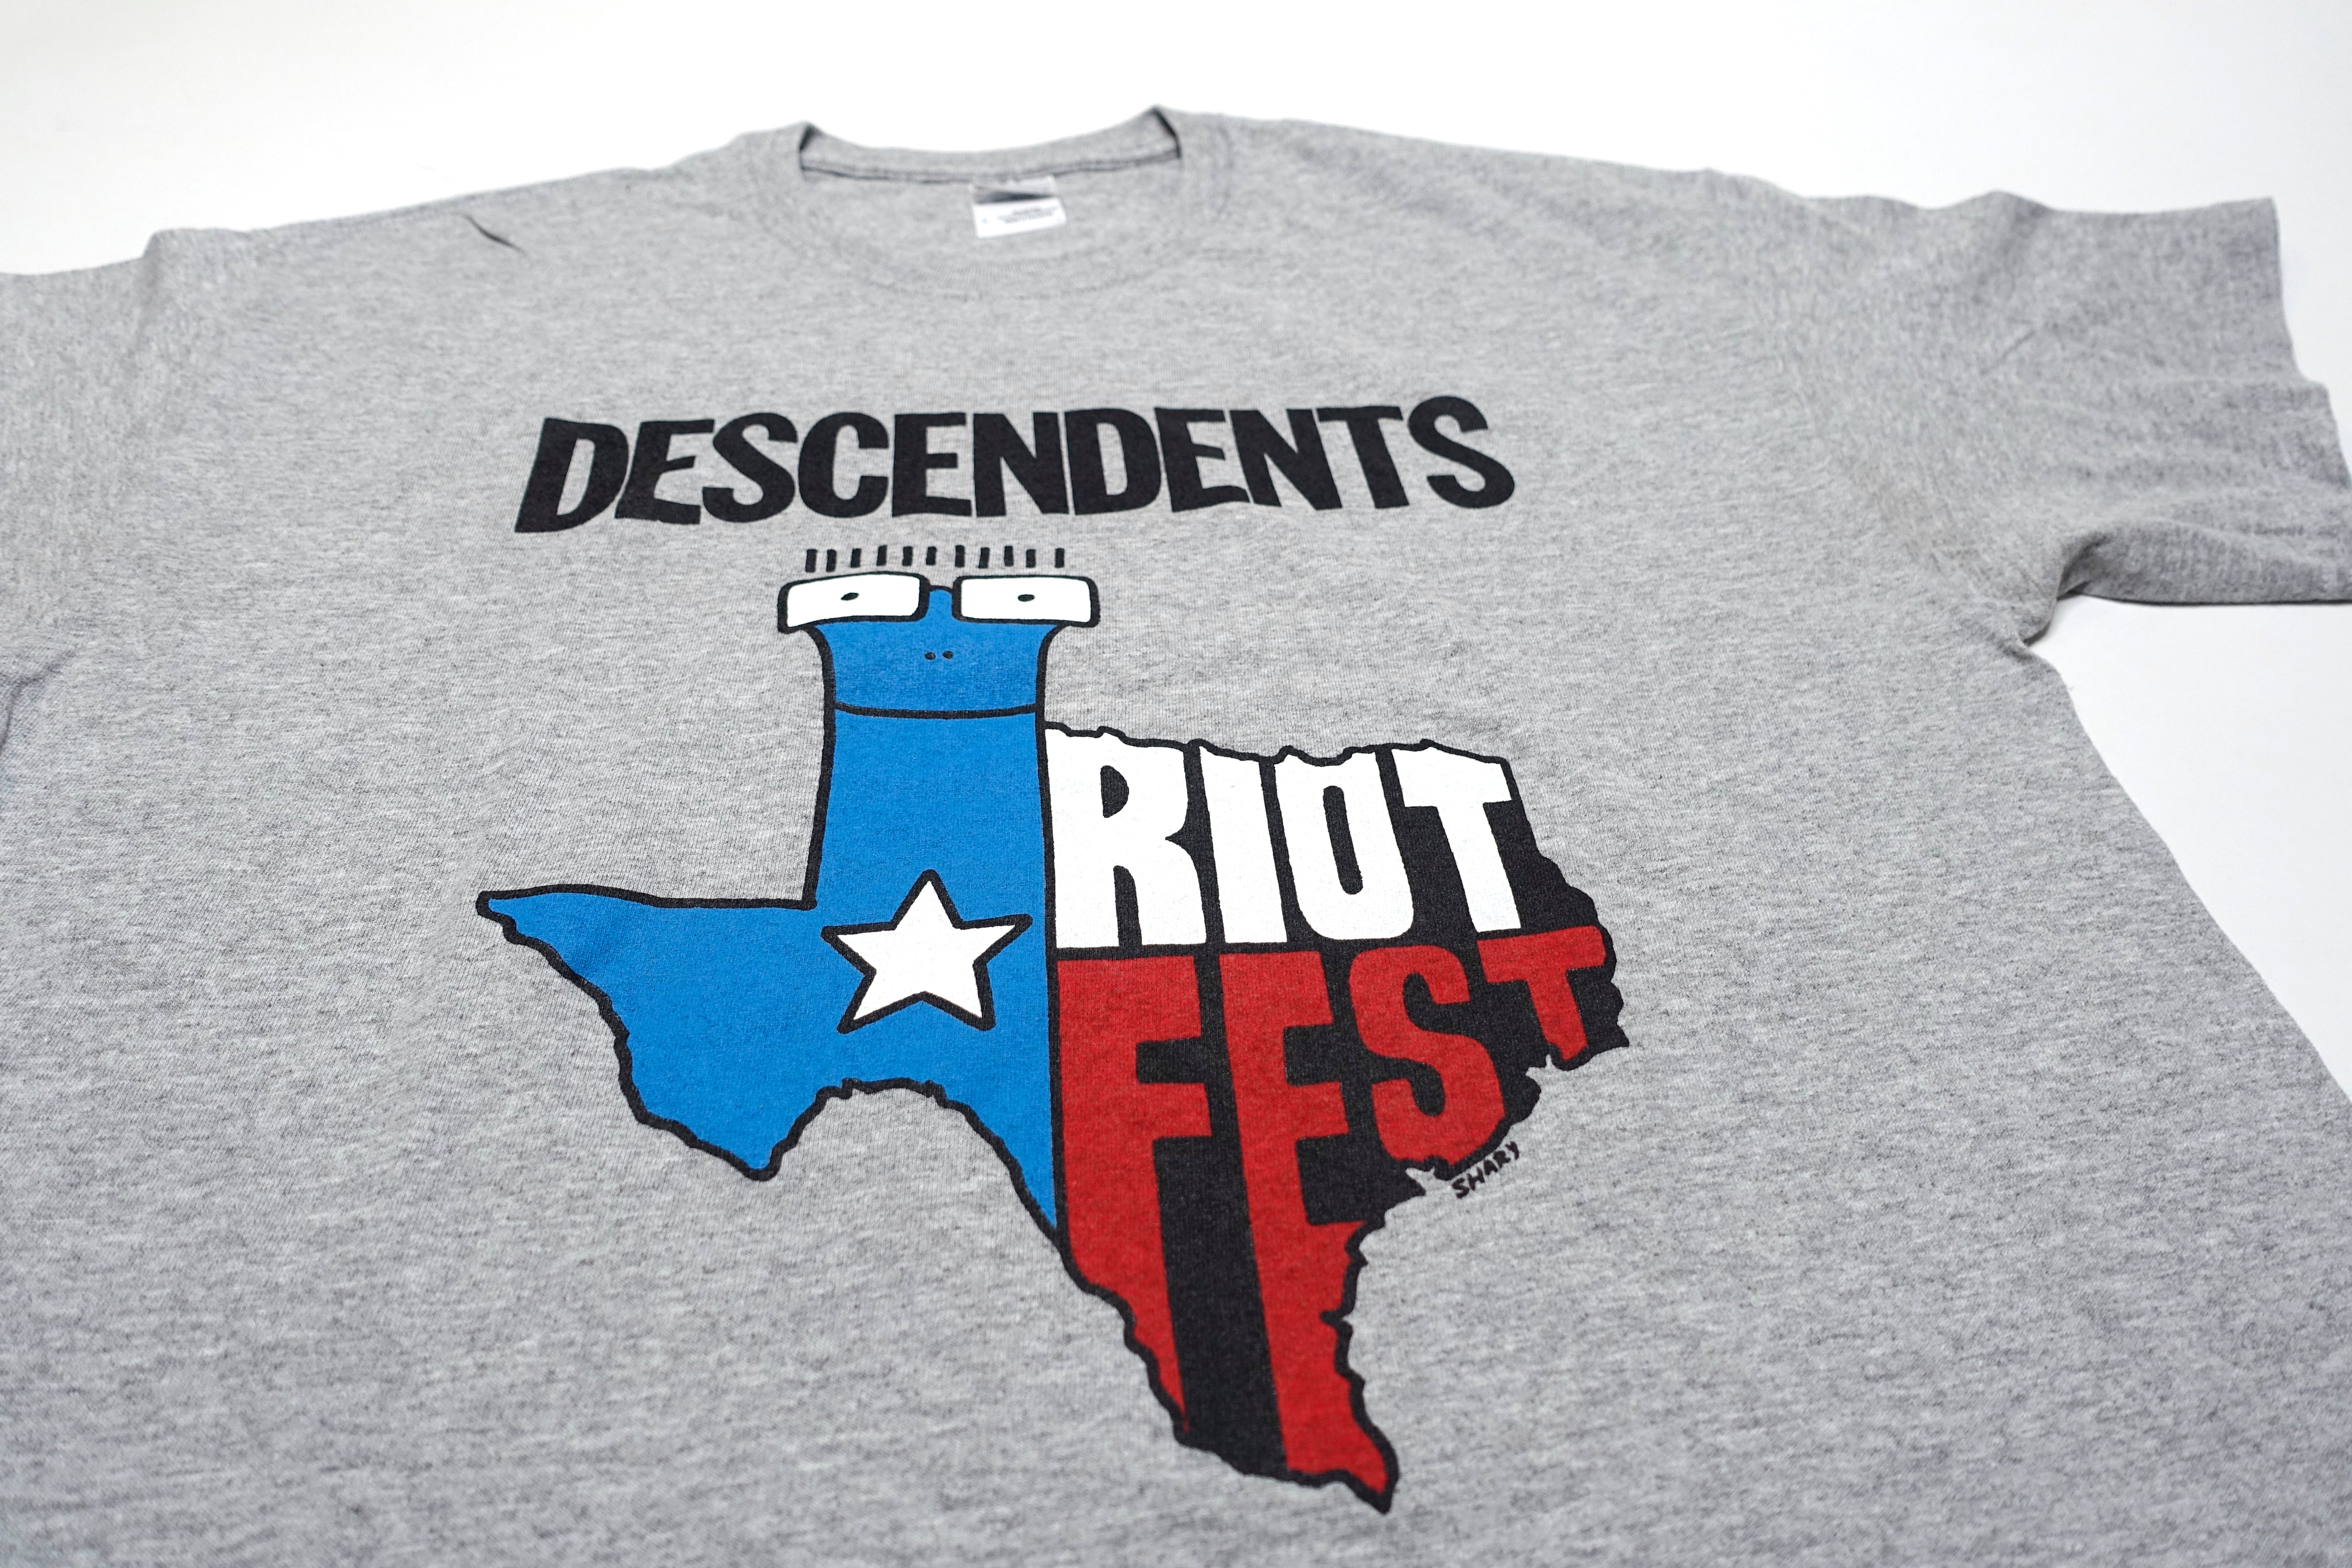 Descendents - Riot Fest Texas 2012 Tour Shirt Size Large